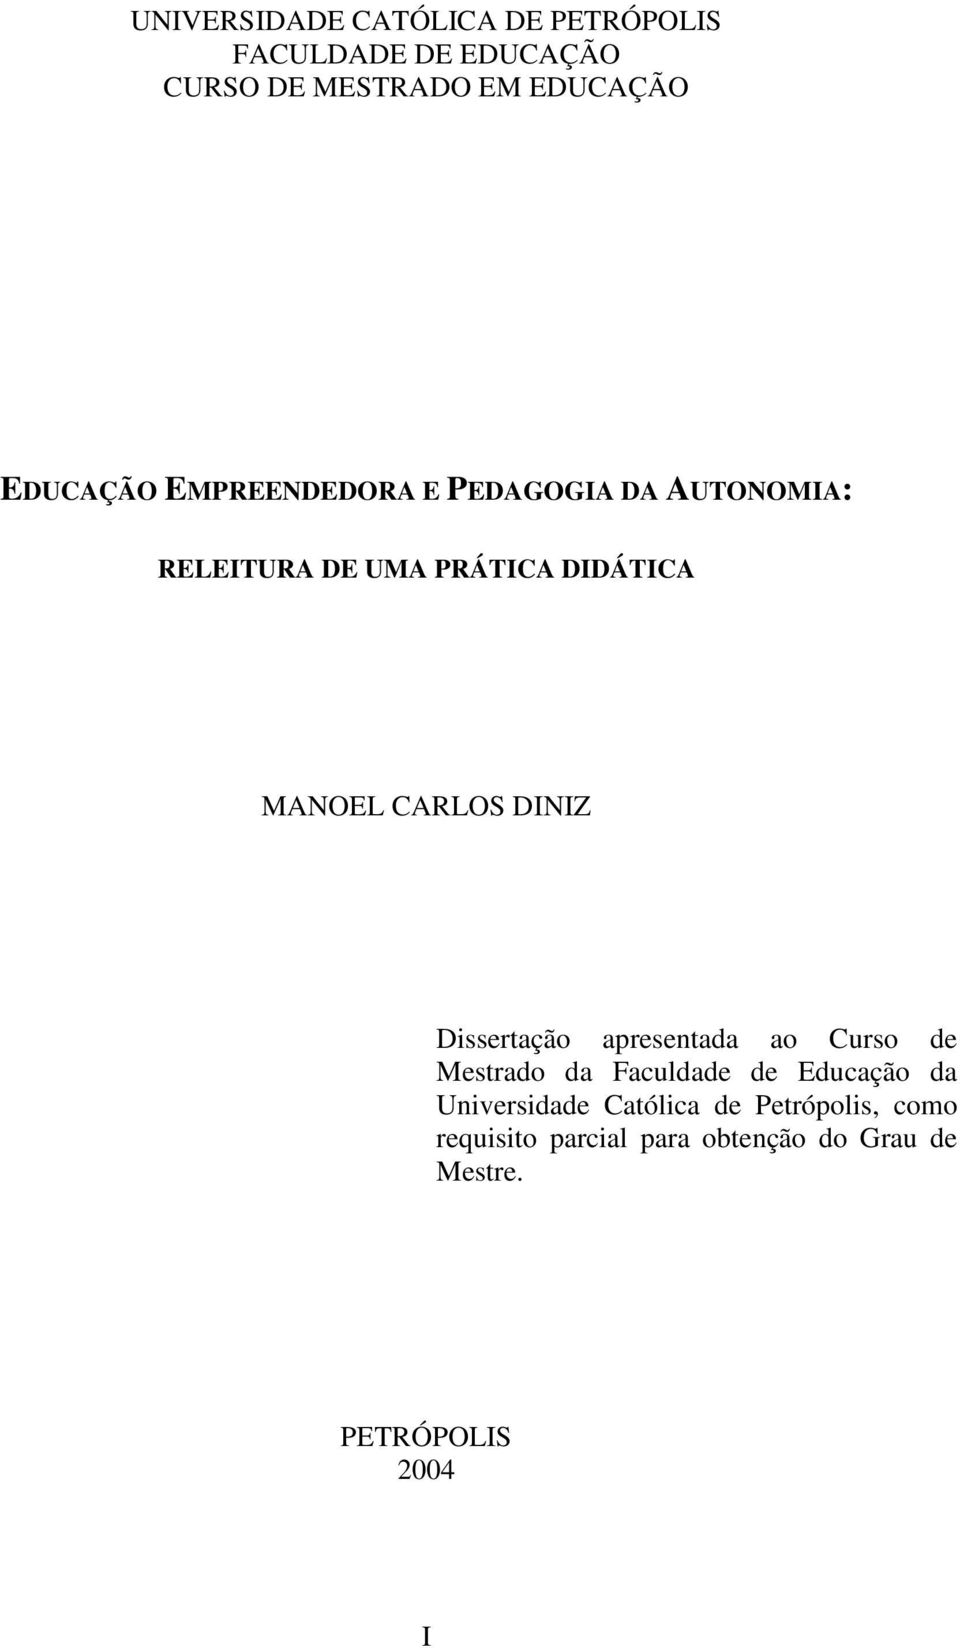 CARLOS DINIZ Dissertação apresentada ao Curso de Mestrado da Faculdade de Educação da